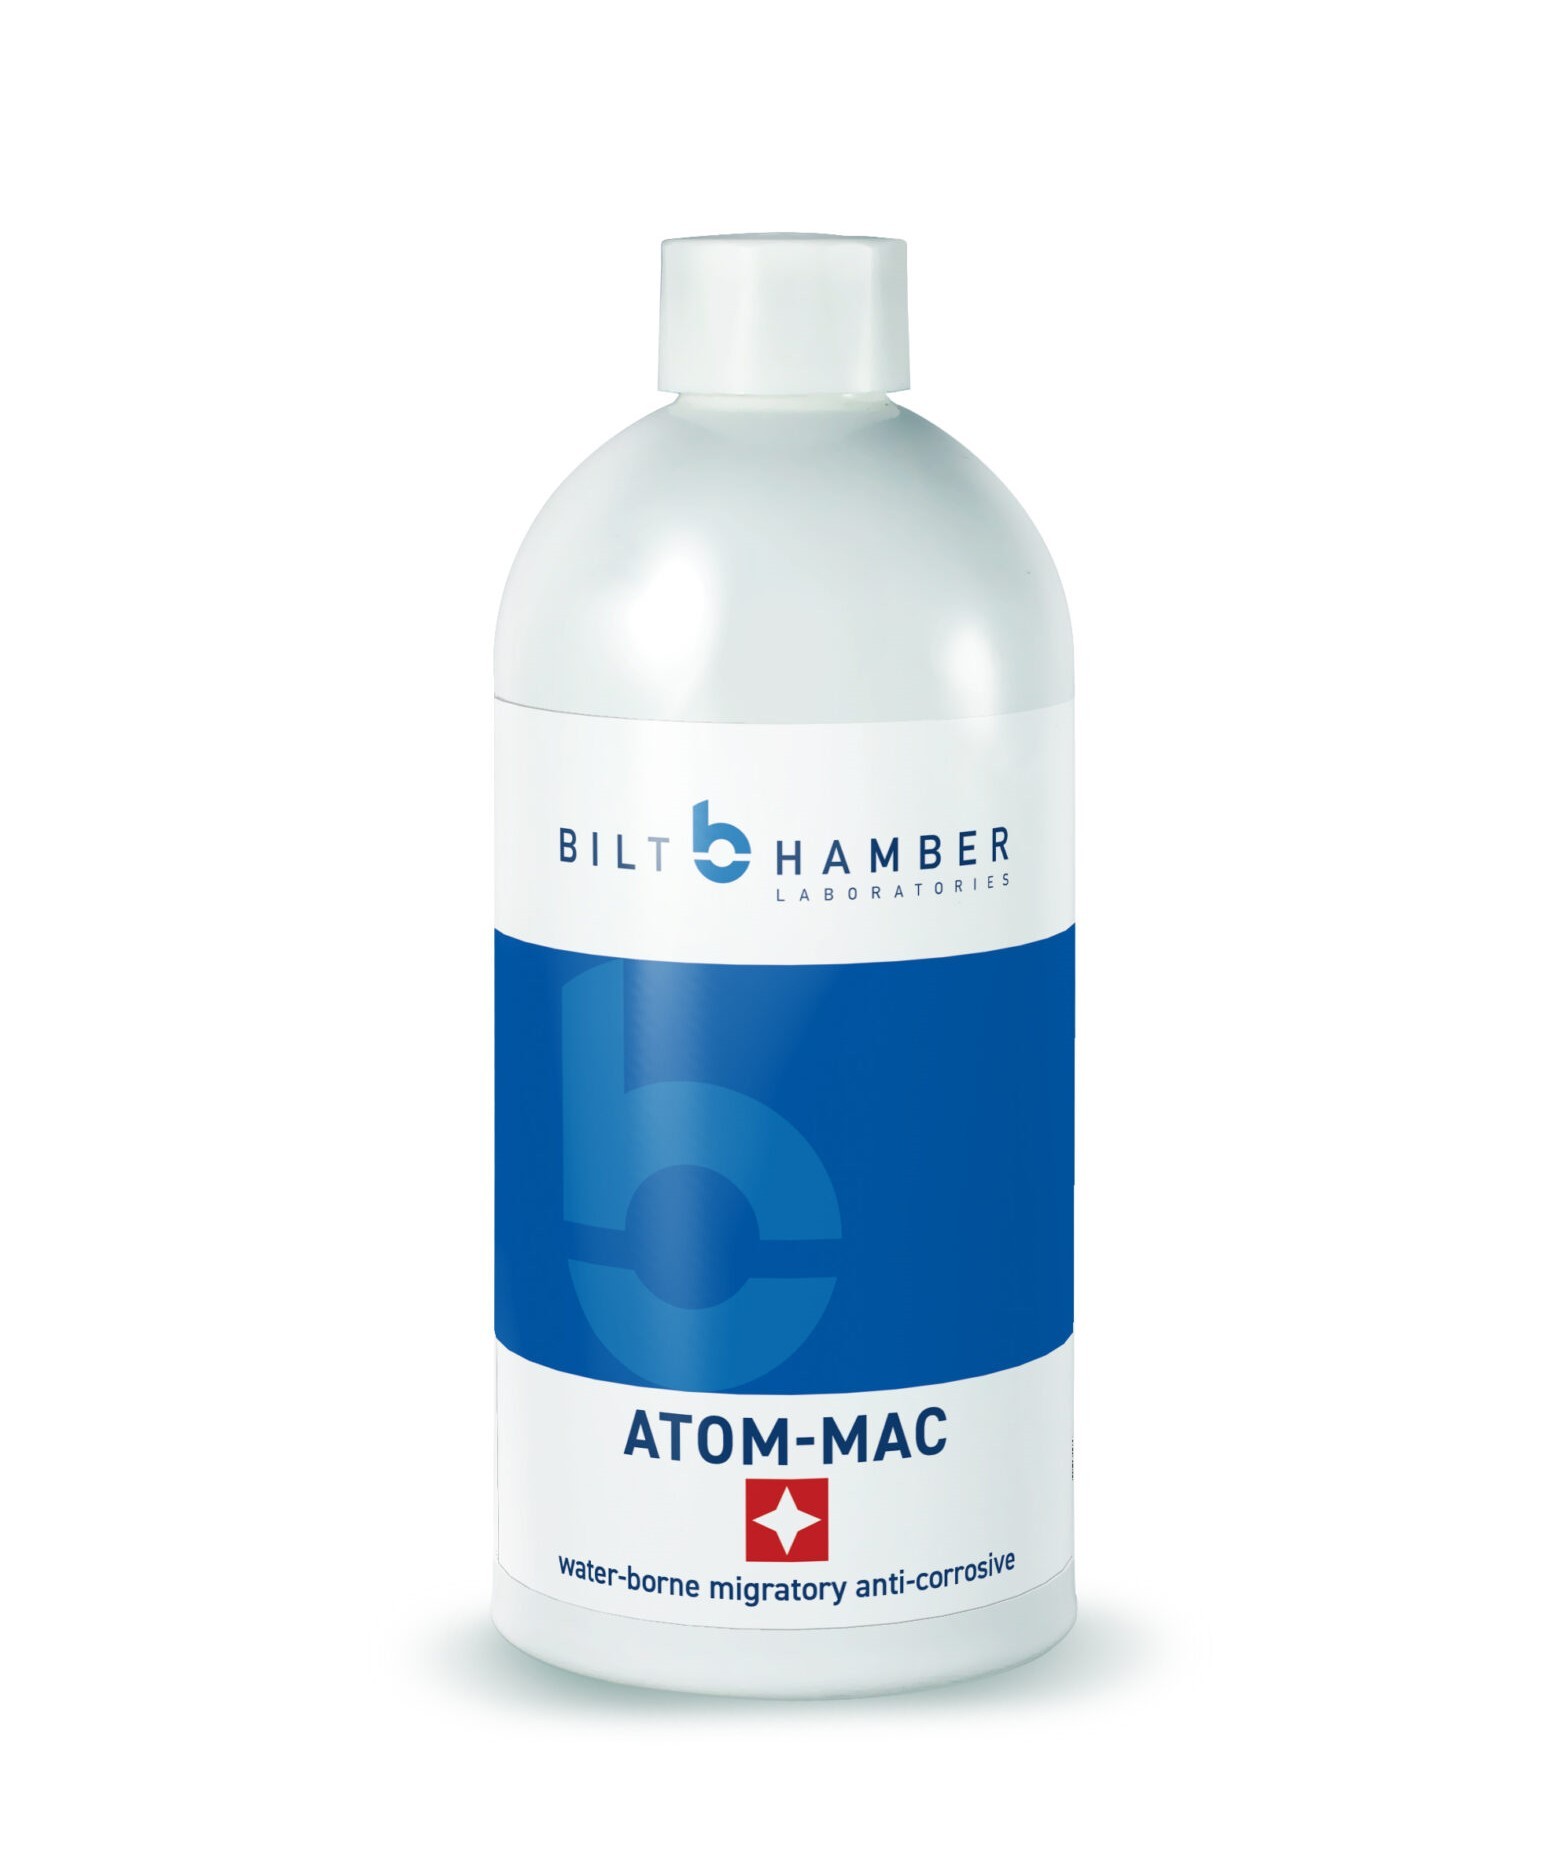 Ochrana Bilt Hamber Atom-Mac (500 ml)